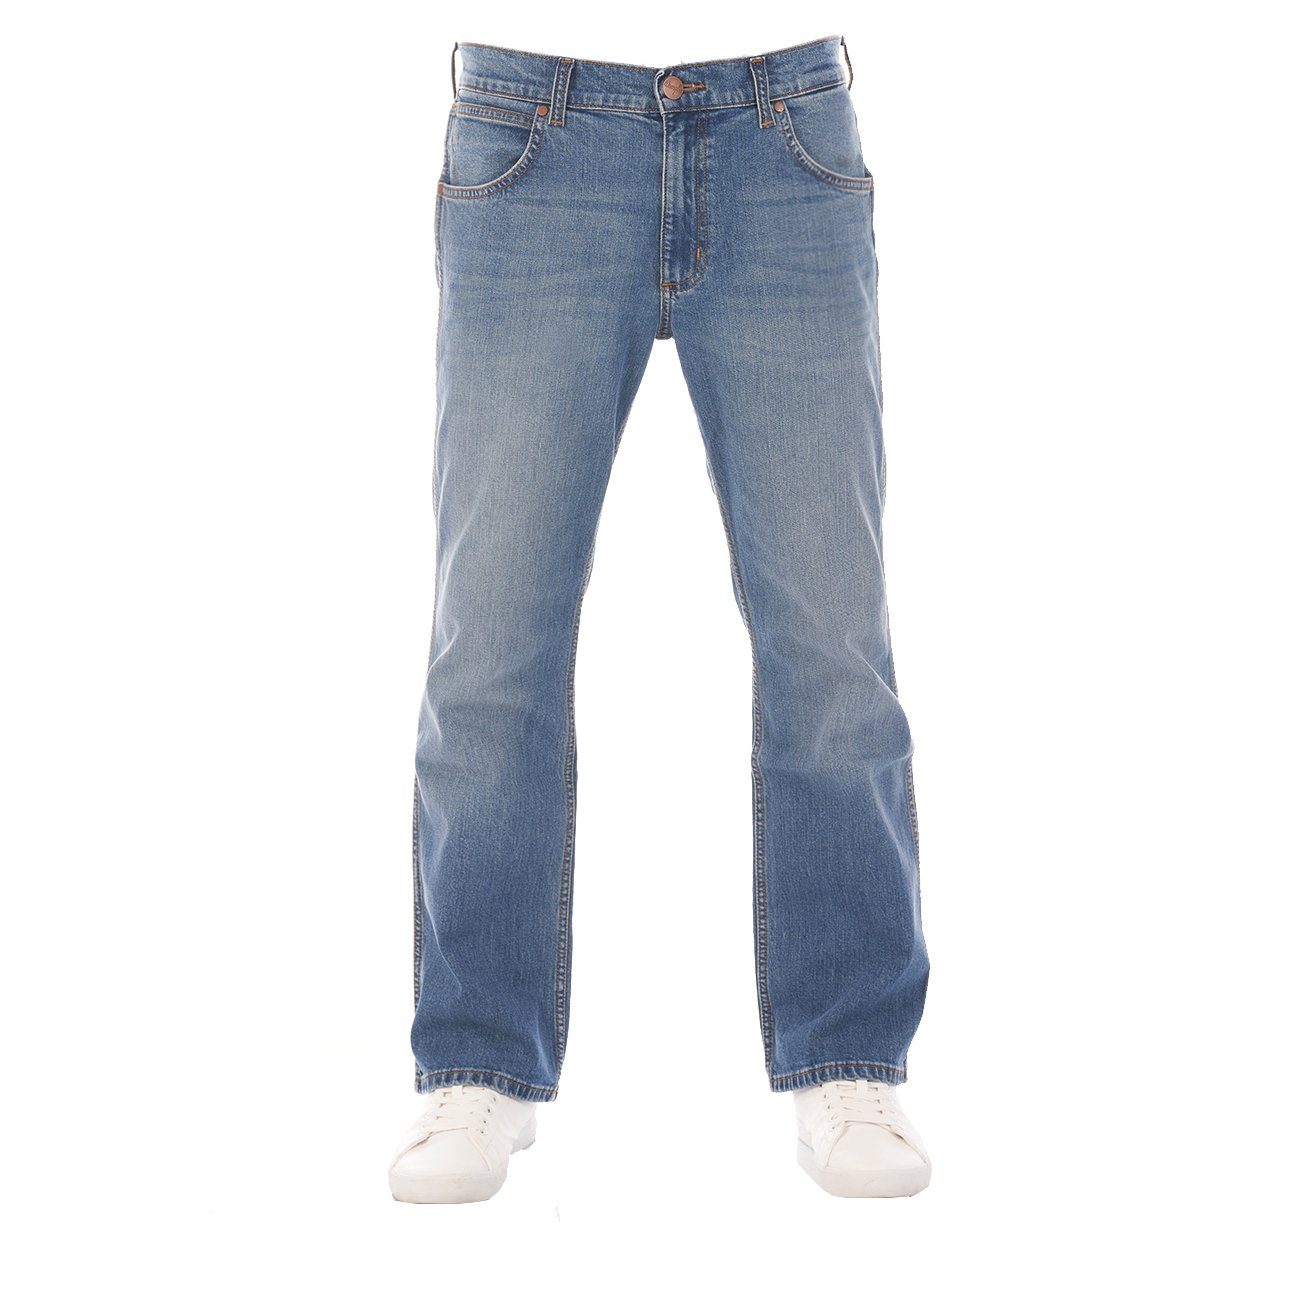 Qualität ist sehr gut Wrangler Bootcut-Jeans Herren Cut (WSS5KN95Z) Hose Denim Boot Jacksville Worn Stretch Vintage Jeanshose mit